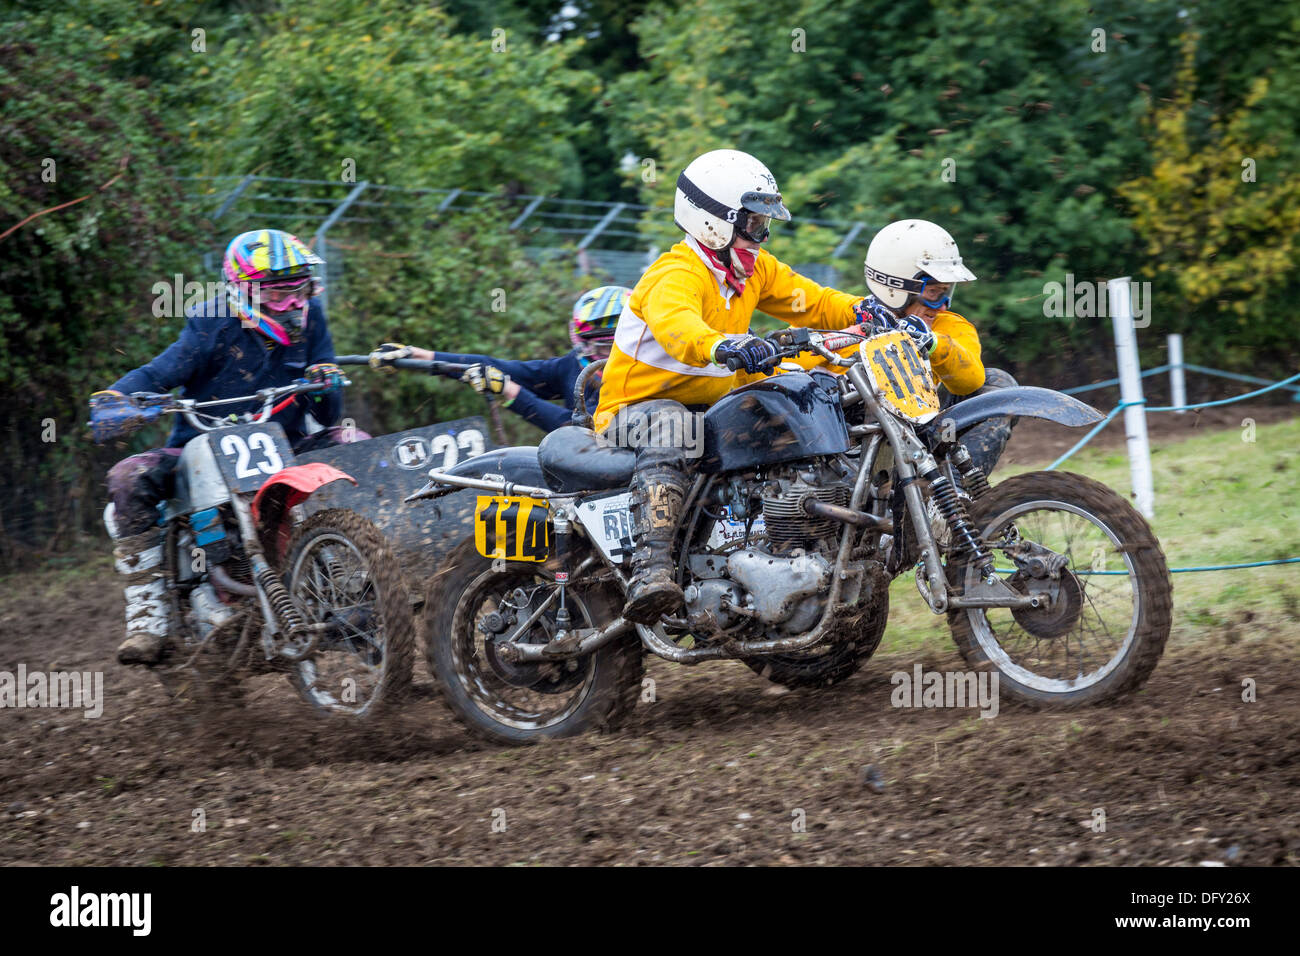 Moto-X bici e sidecar Racing alla 2013 Goodwood incontro, Sussex, Regno Unito. Foto Stock